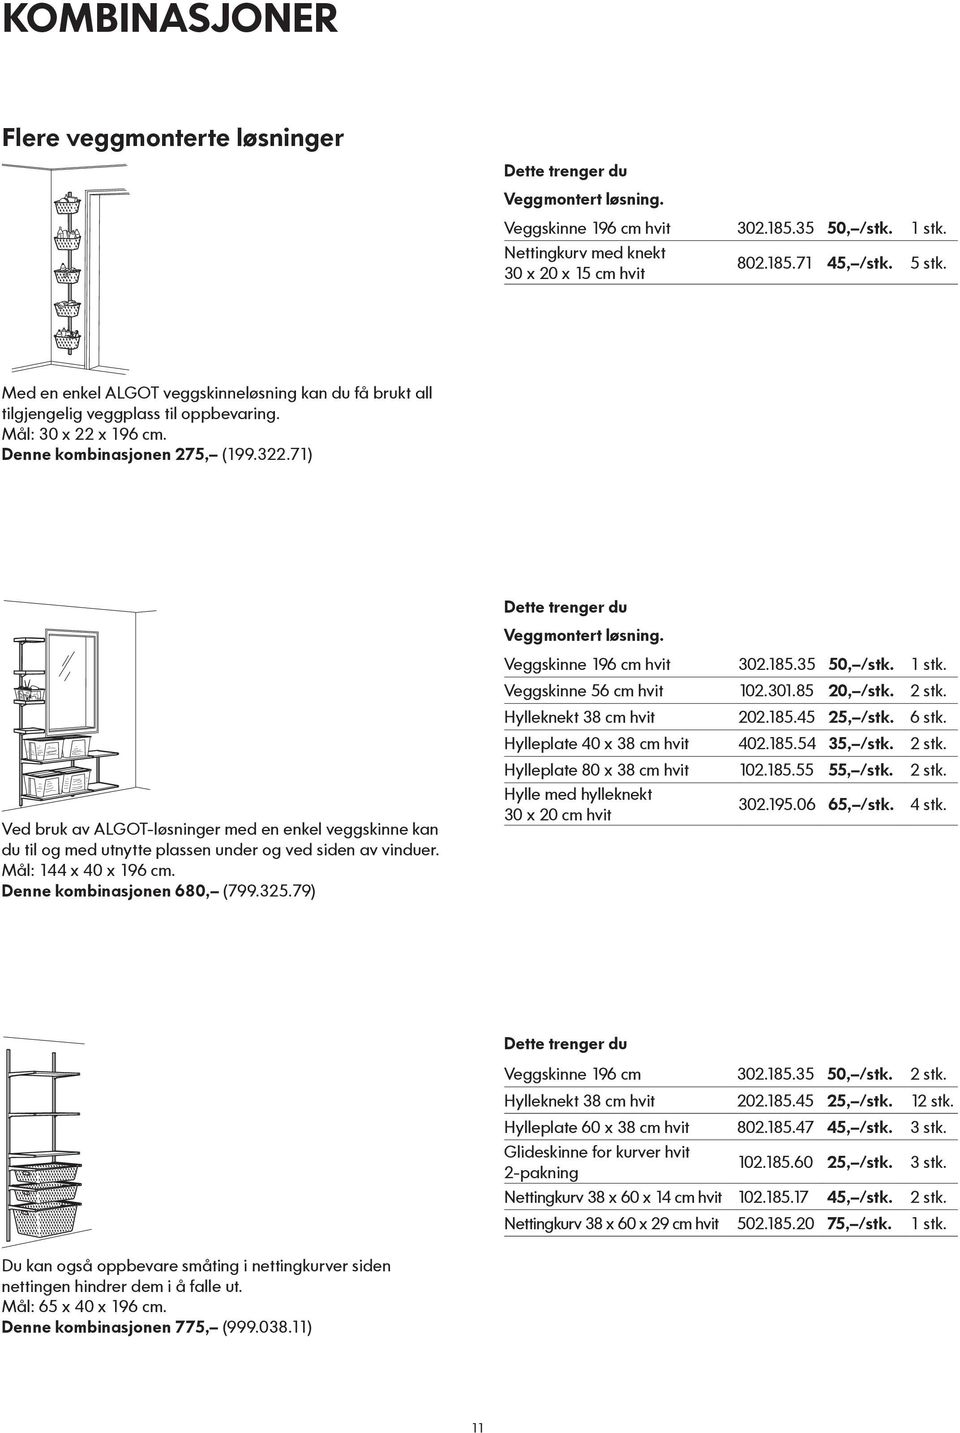 71) Ved bruk av ALGOT-løsninger med en enkel veggskinne kan du til og med utnytte plassen under og ved siden av vinduer. Mål: 144 x 40 x 196 cm. Denne kombinasjonen 680, (799.325.